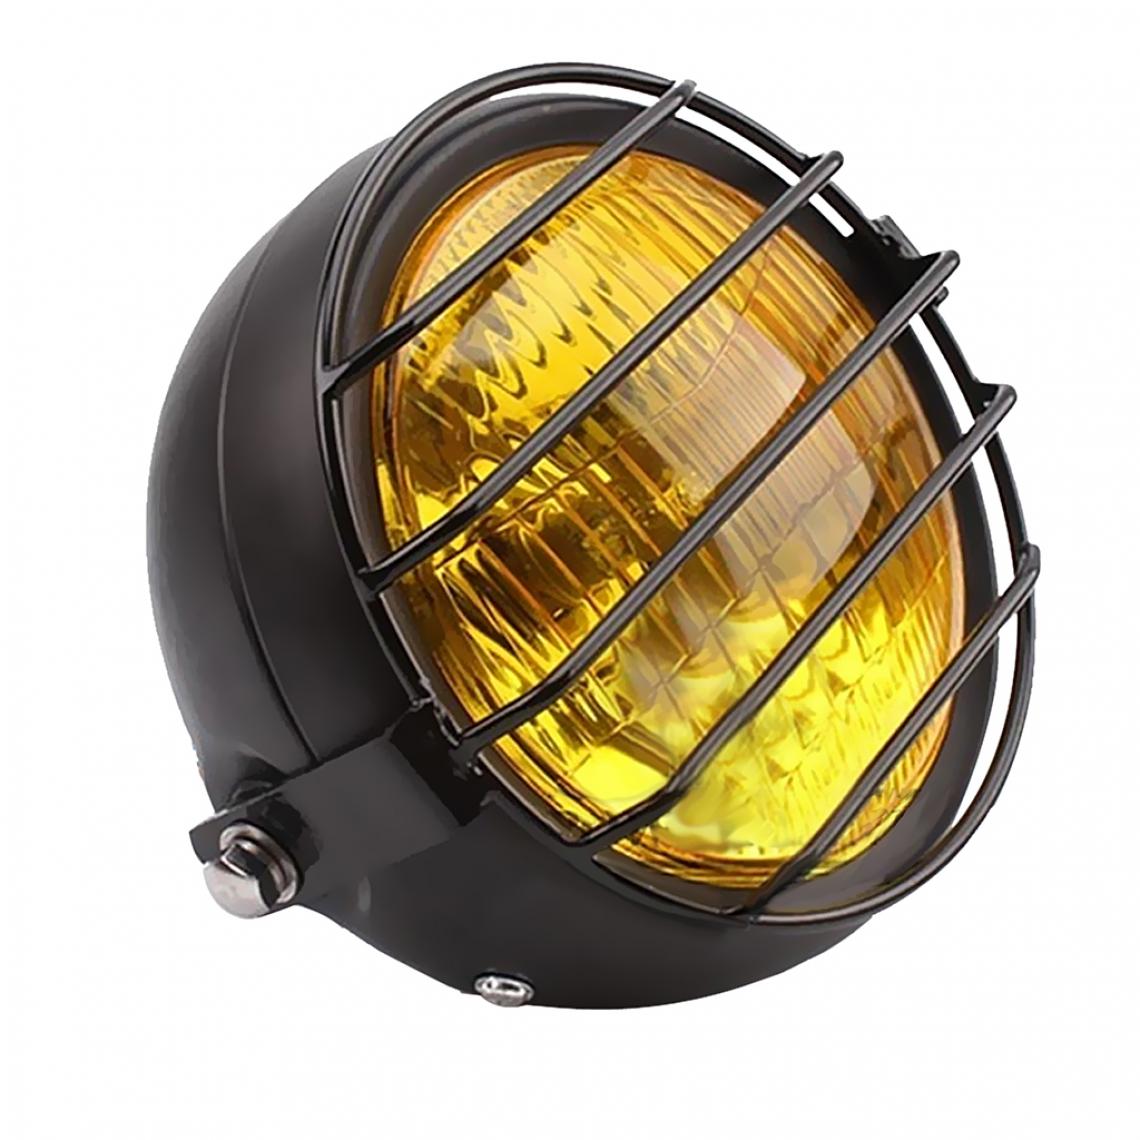 marque generique - Lampe frontale rétro phare moto avec couvercle grill pour gn125 cg125 argent - Néon PC